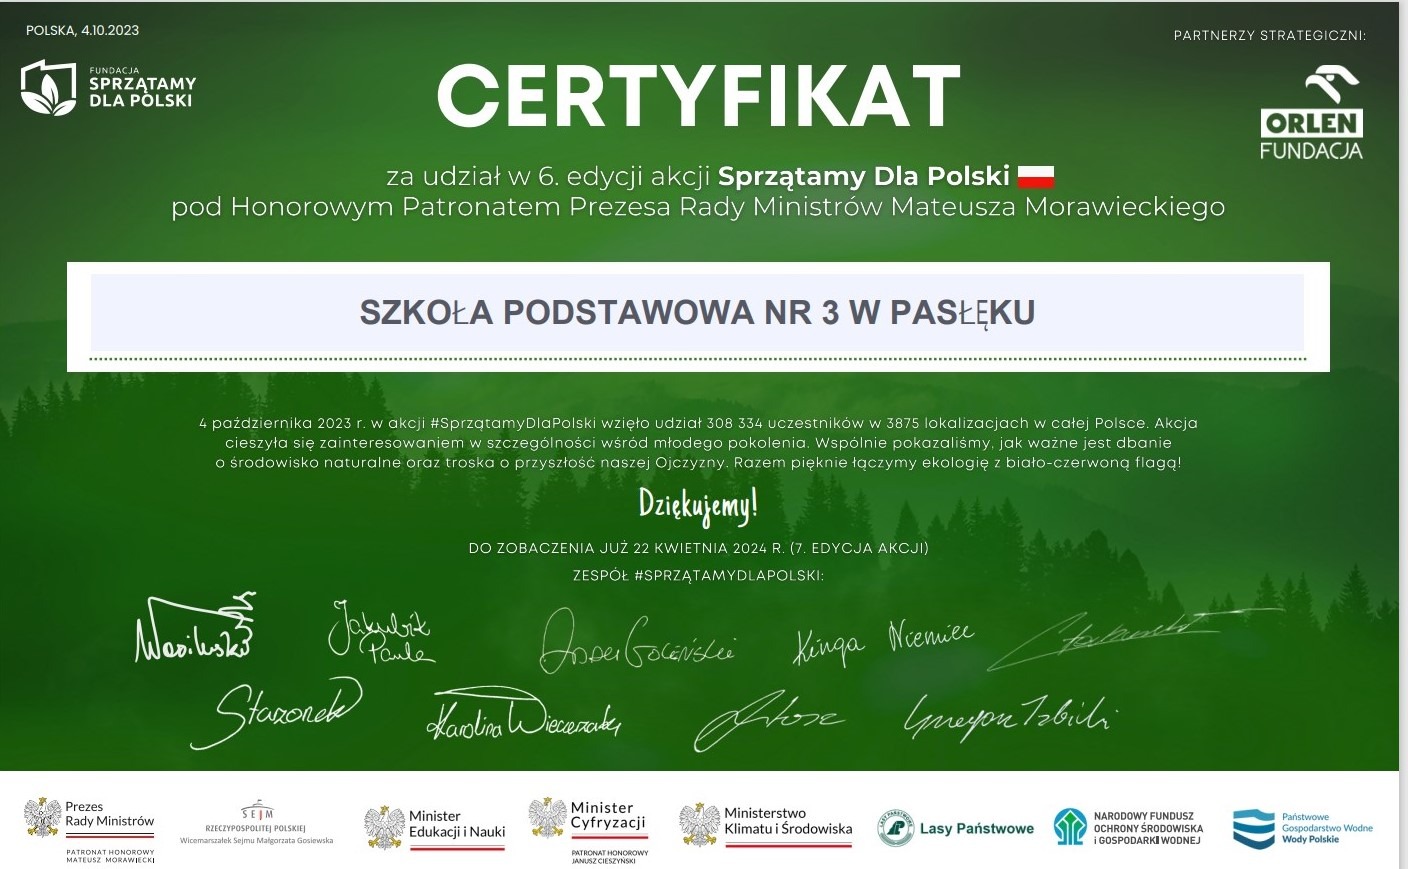 9.11.2023 Certyfikat udziału w akcji Sprzątamy dla Polski, Szkoła podstawowa nr 3 w Pasłęku